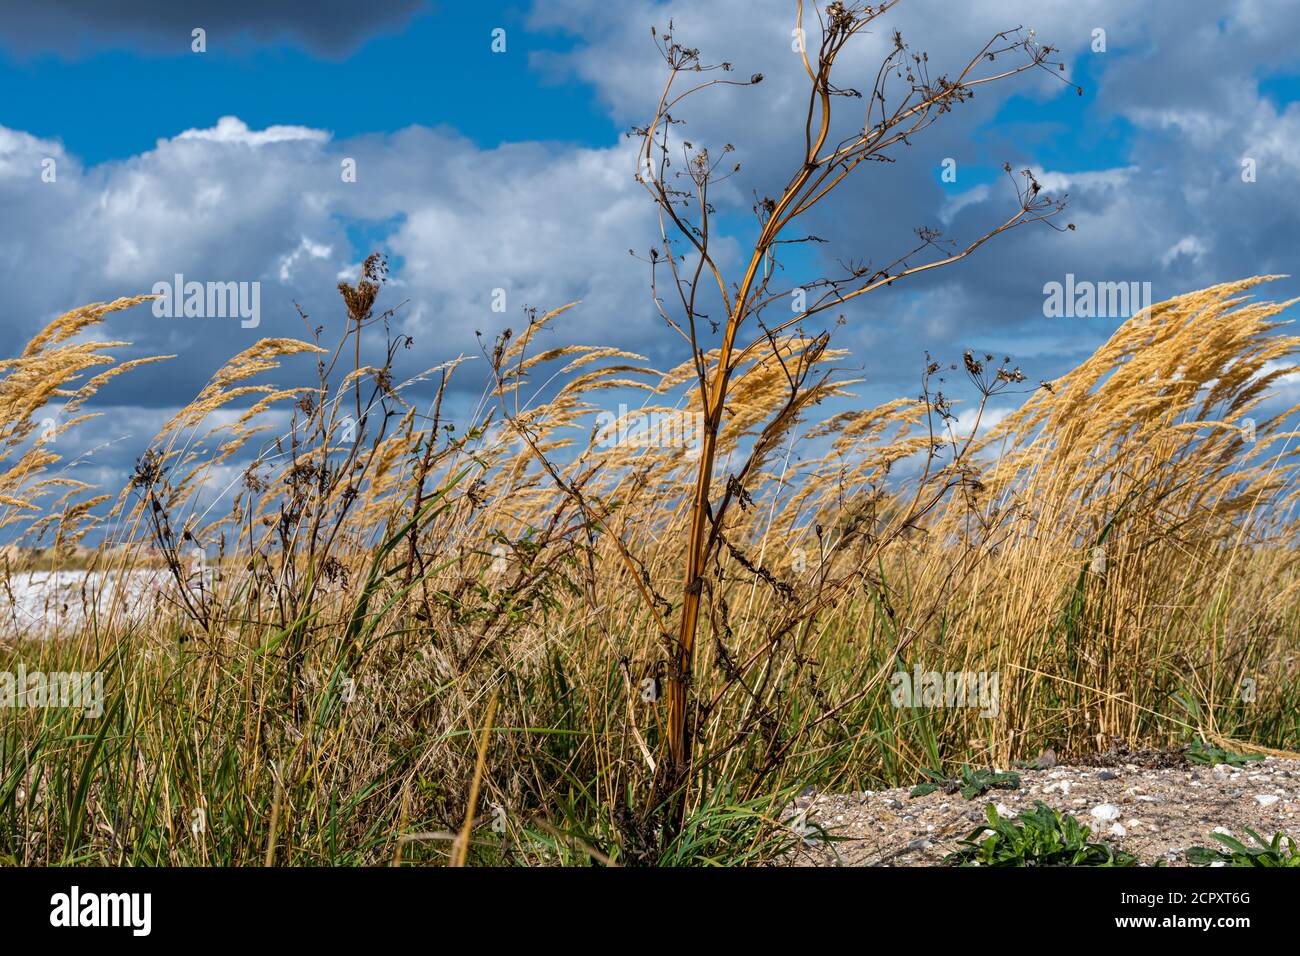 Una foto de la hierba seca con hierba salvaje y un un cielo dramático con nubes oscuras en el fondo Foto de stock